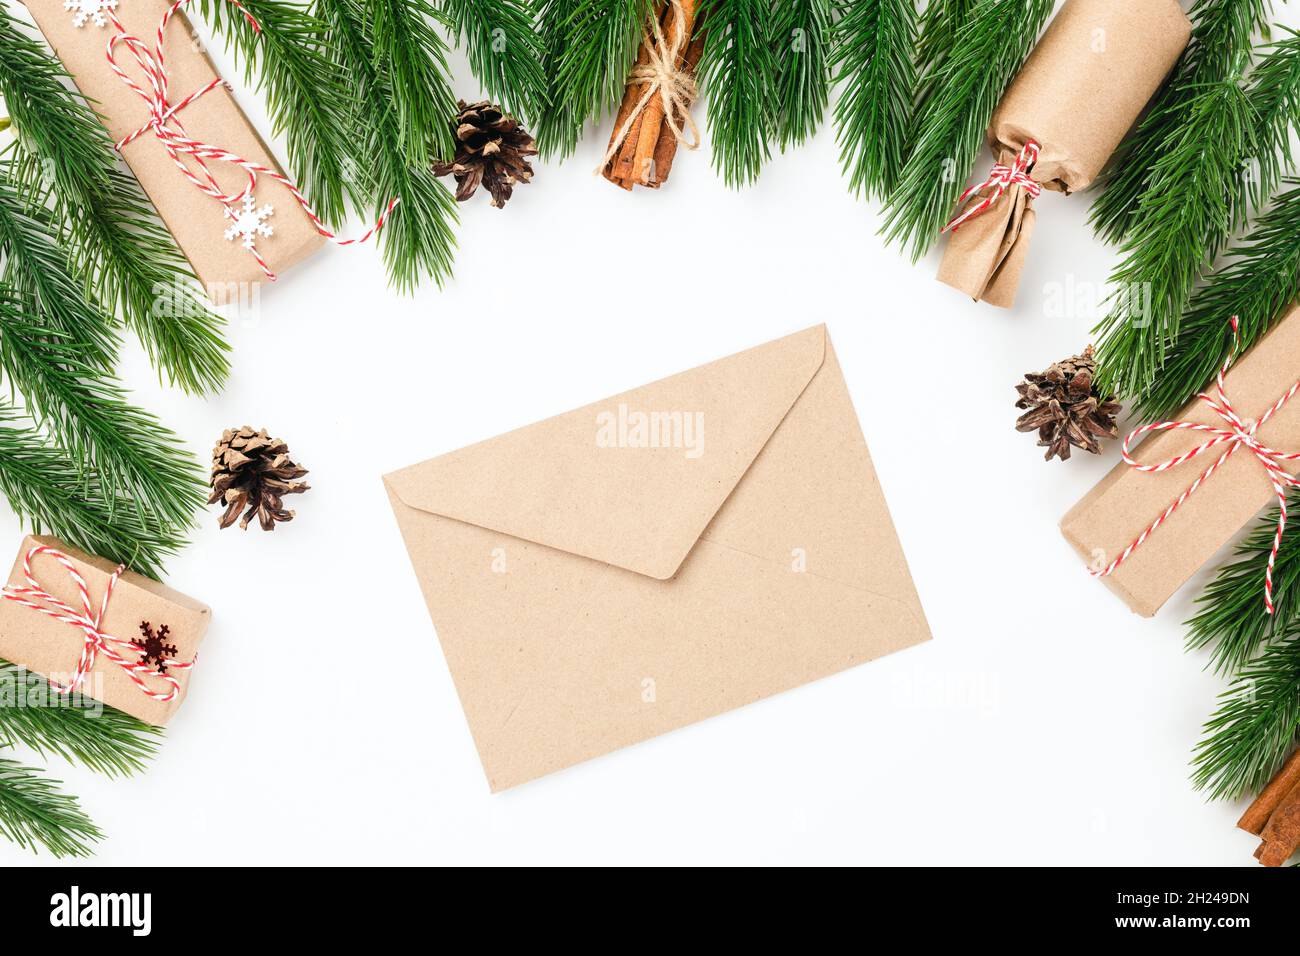 Fond de noël de l'enveloppe vierge artisanale pour la lettre au Père Noël dans le cadre de branches d'arbre de Noël avec des décorations Banque D'Images